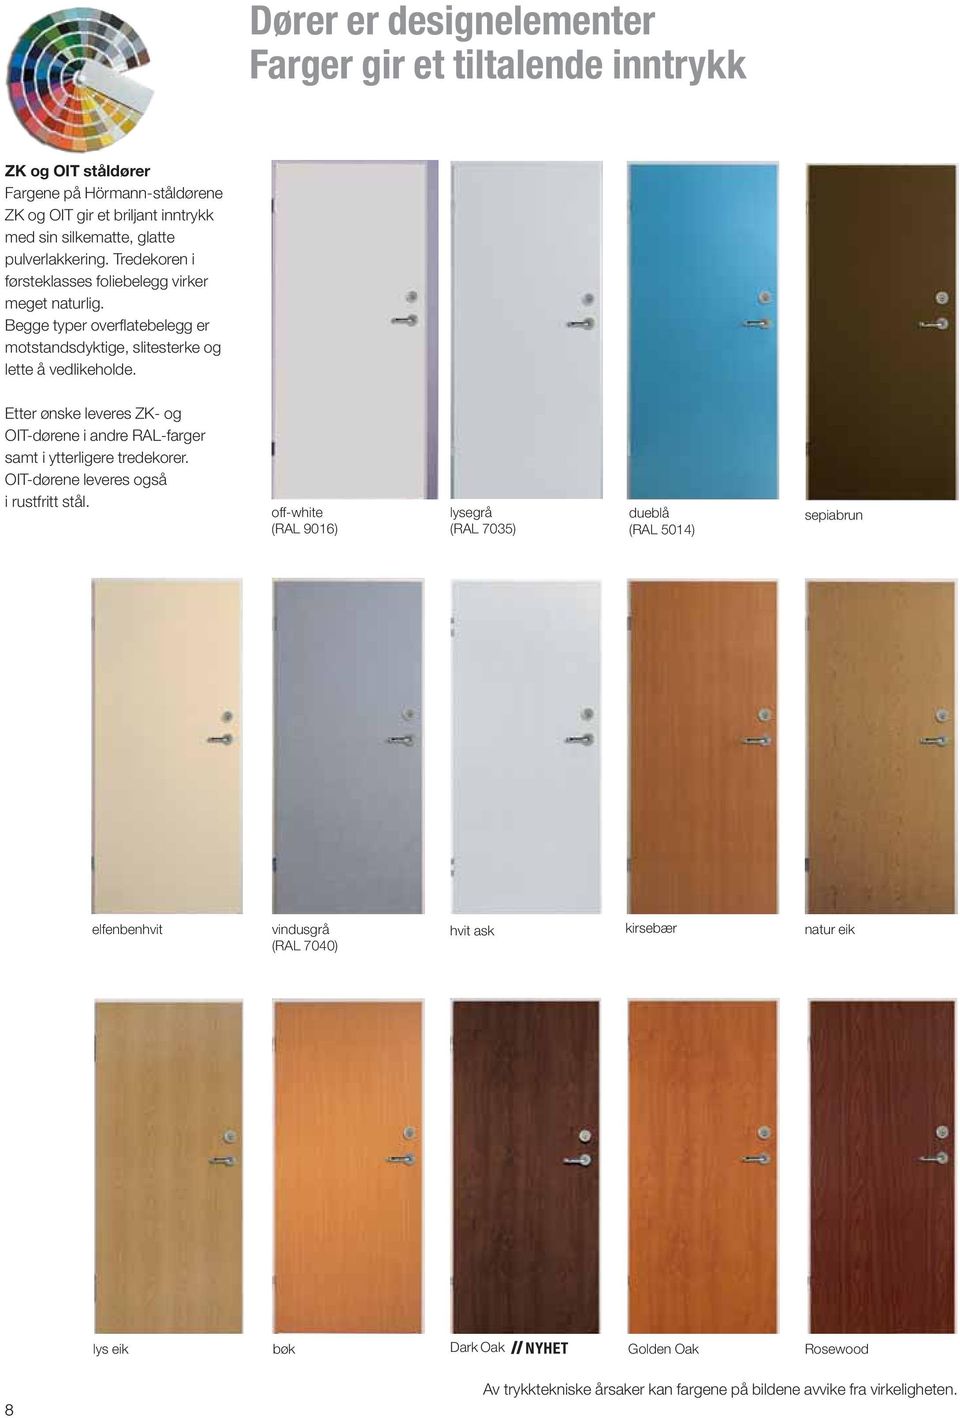 Etter ønske leveres ZK- og OIT-dørene i andre RAL-farger samt i ytterligere tredekorer. OIT-dørene leveres også i rustfritt stål.